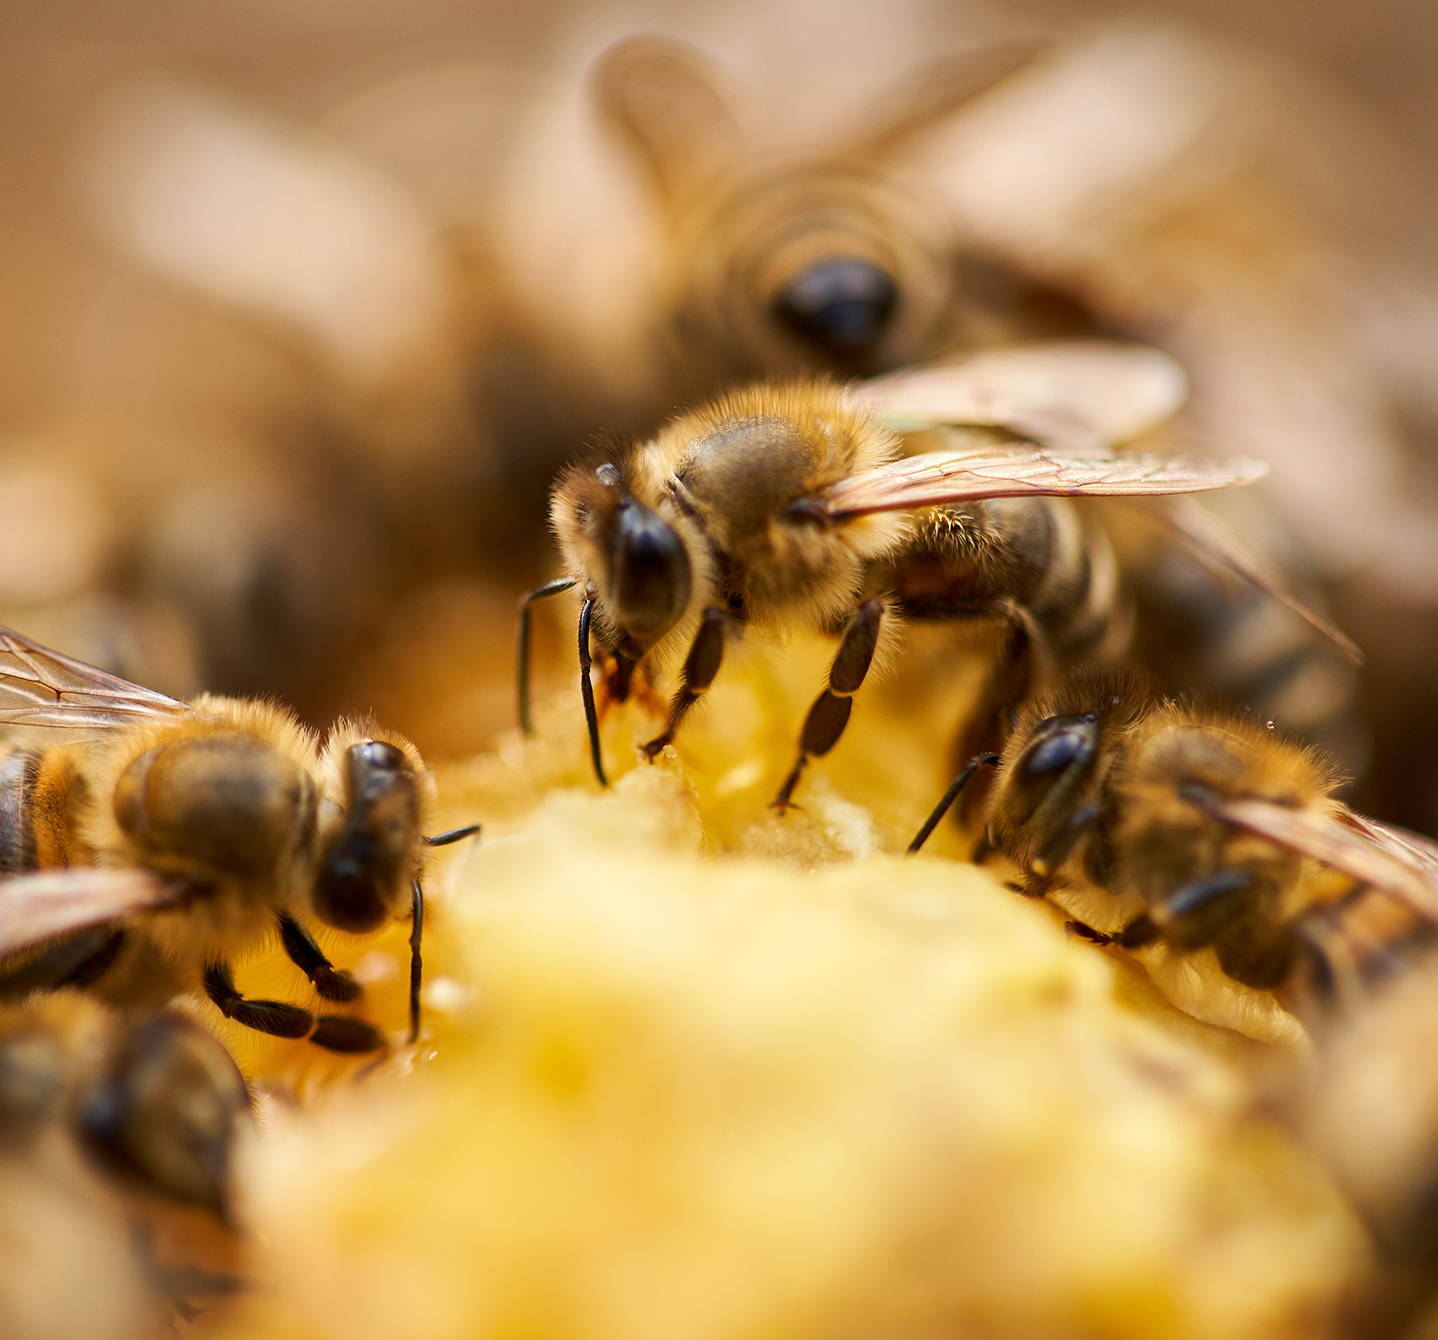 Co je alergie na včelí bodnutí? Tyto včely sbírají nektar. Jed z jejich žihadla může u některých lidí způsobit alergickou reakci